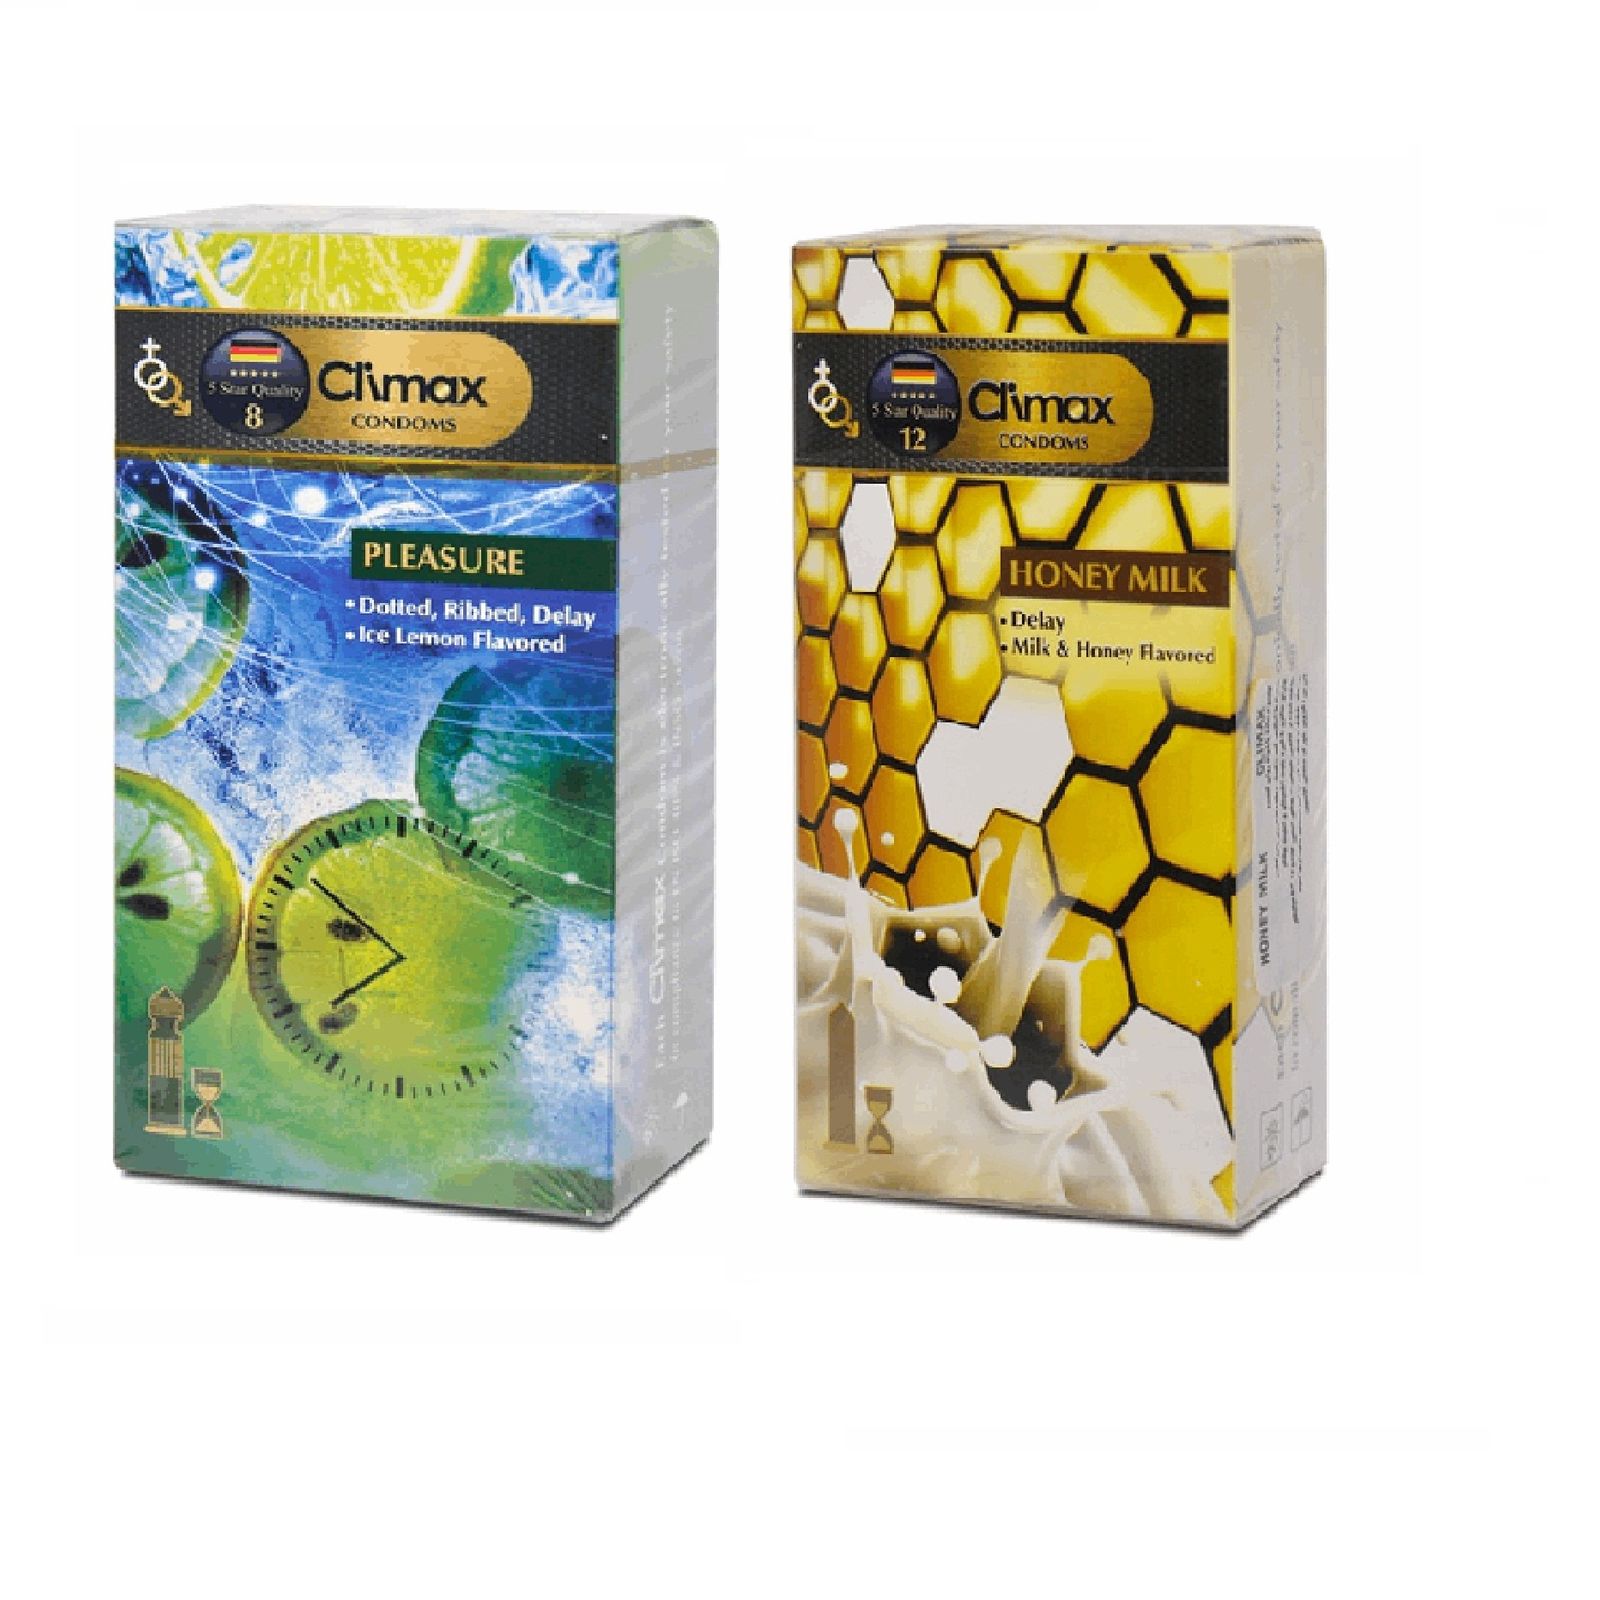 کاندوم کلایمکس مدل Pleasure  بسته 12 عددی به همراه کاندوم کلایمکس مدل Honey Milk  بسته 12 عددی  -  - 1